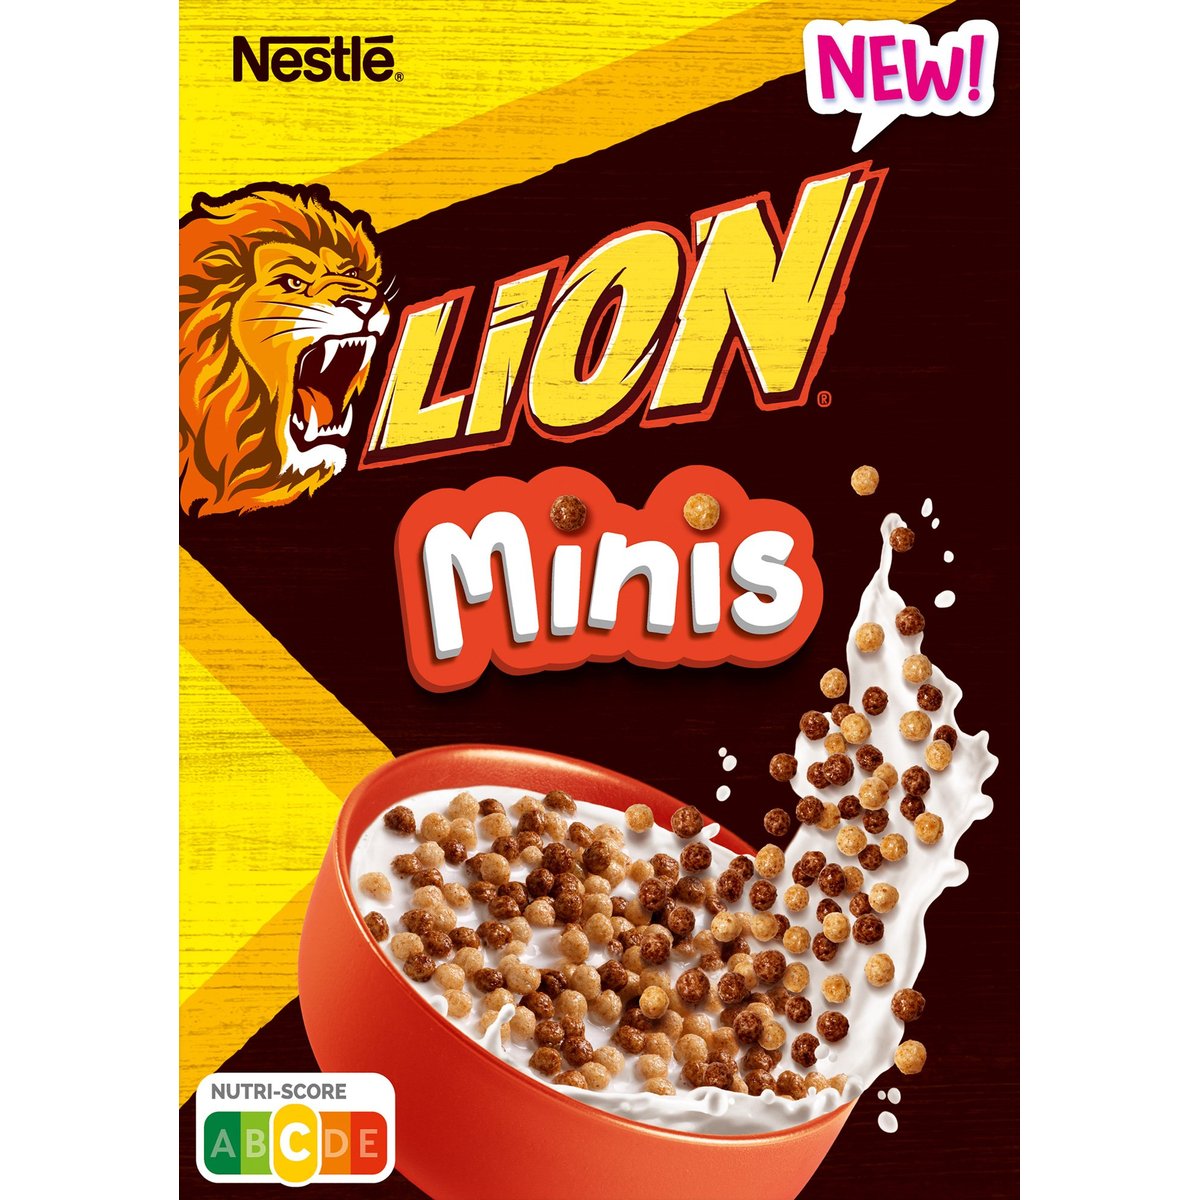 Nestlé Lion Minis